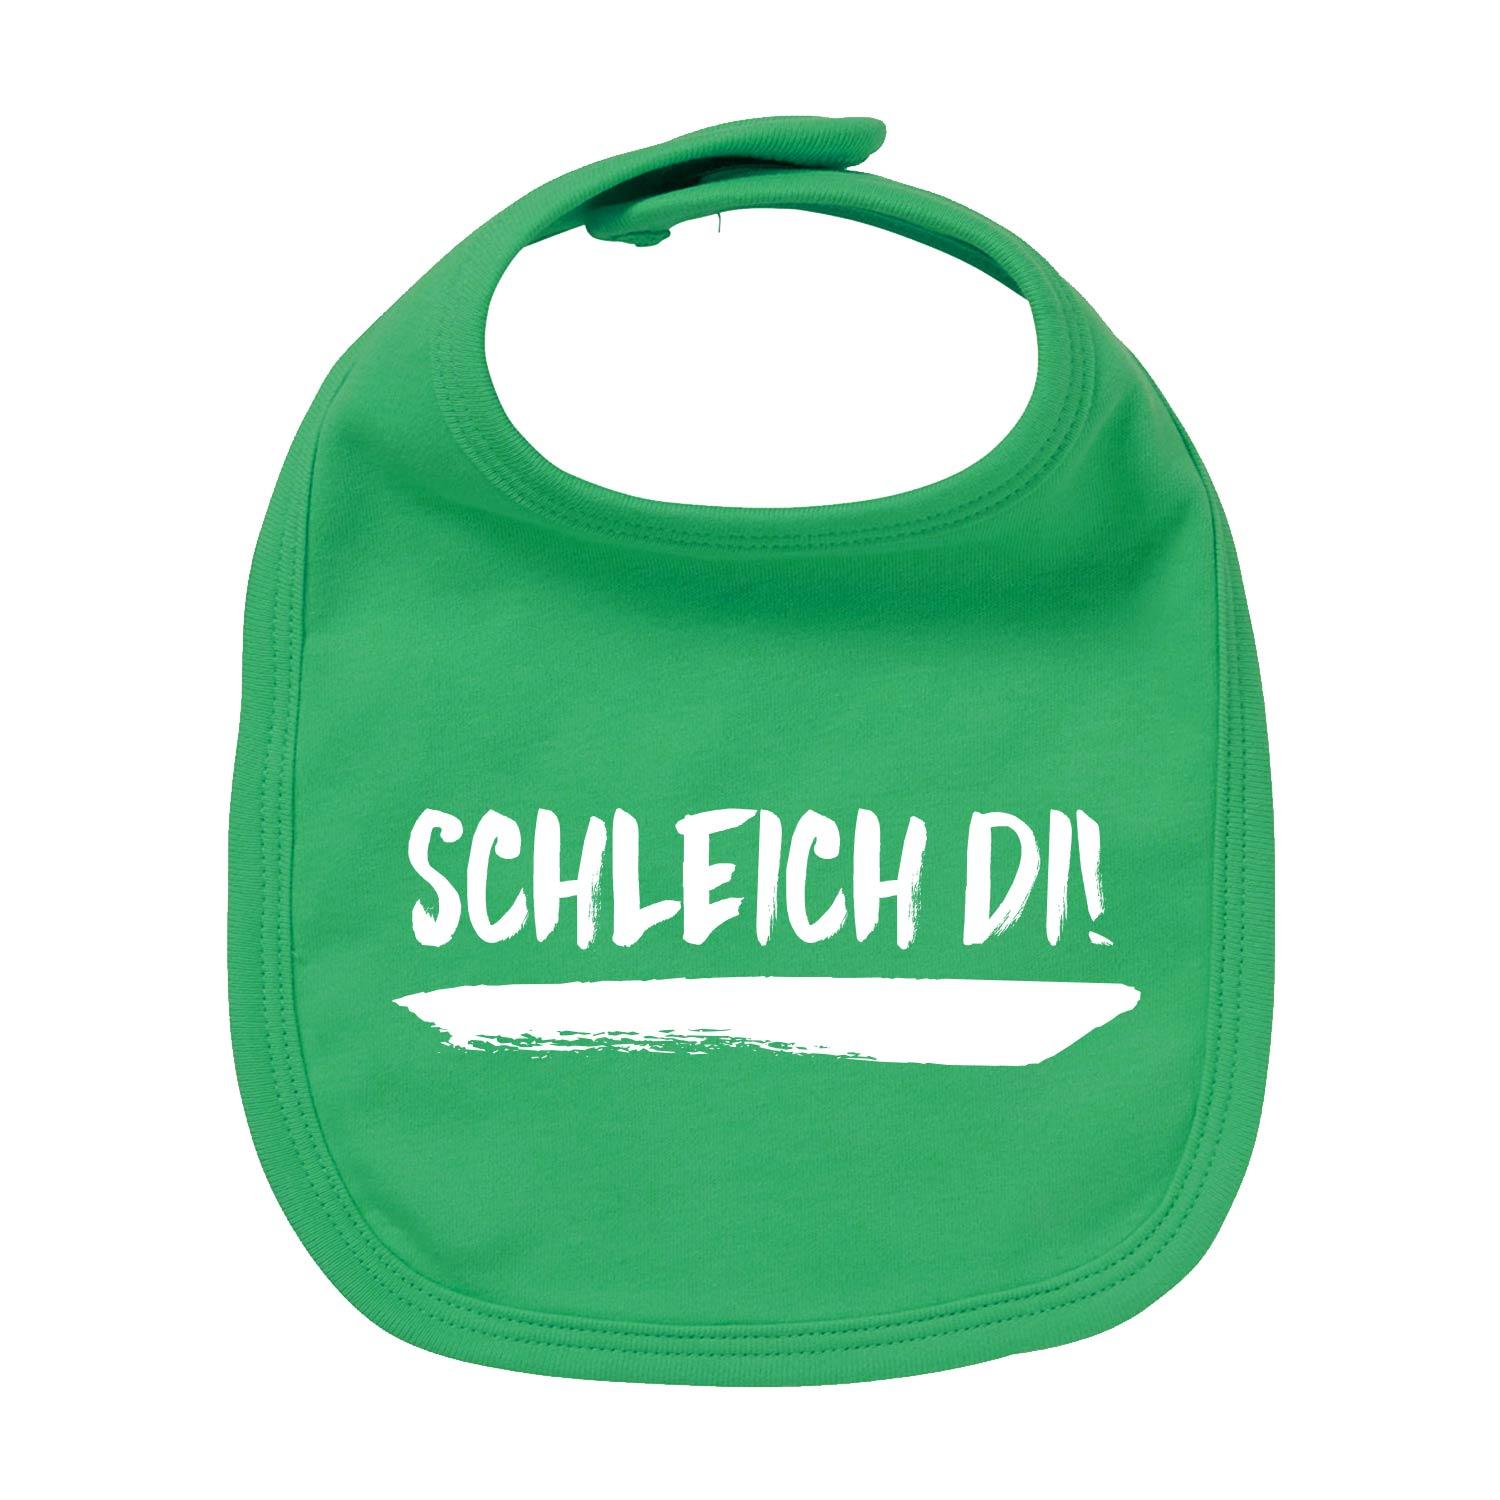 Lätzchen "Schleich di!" - bavariashop - mei LebensGfui